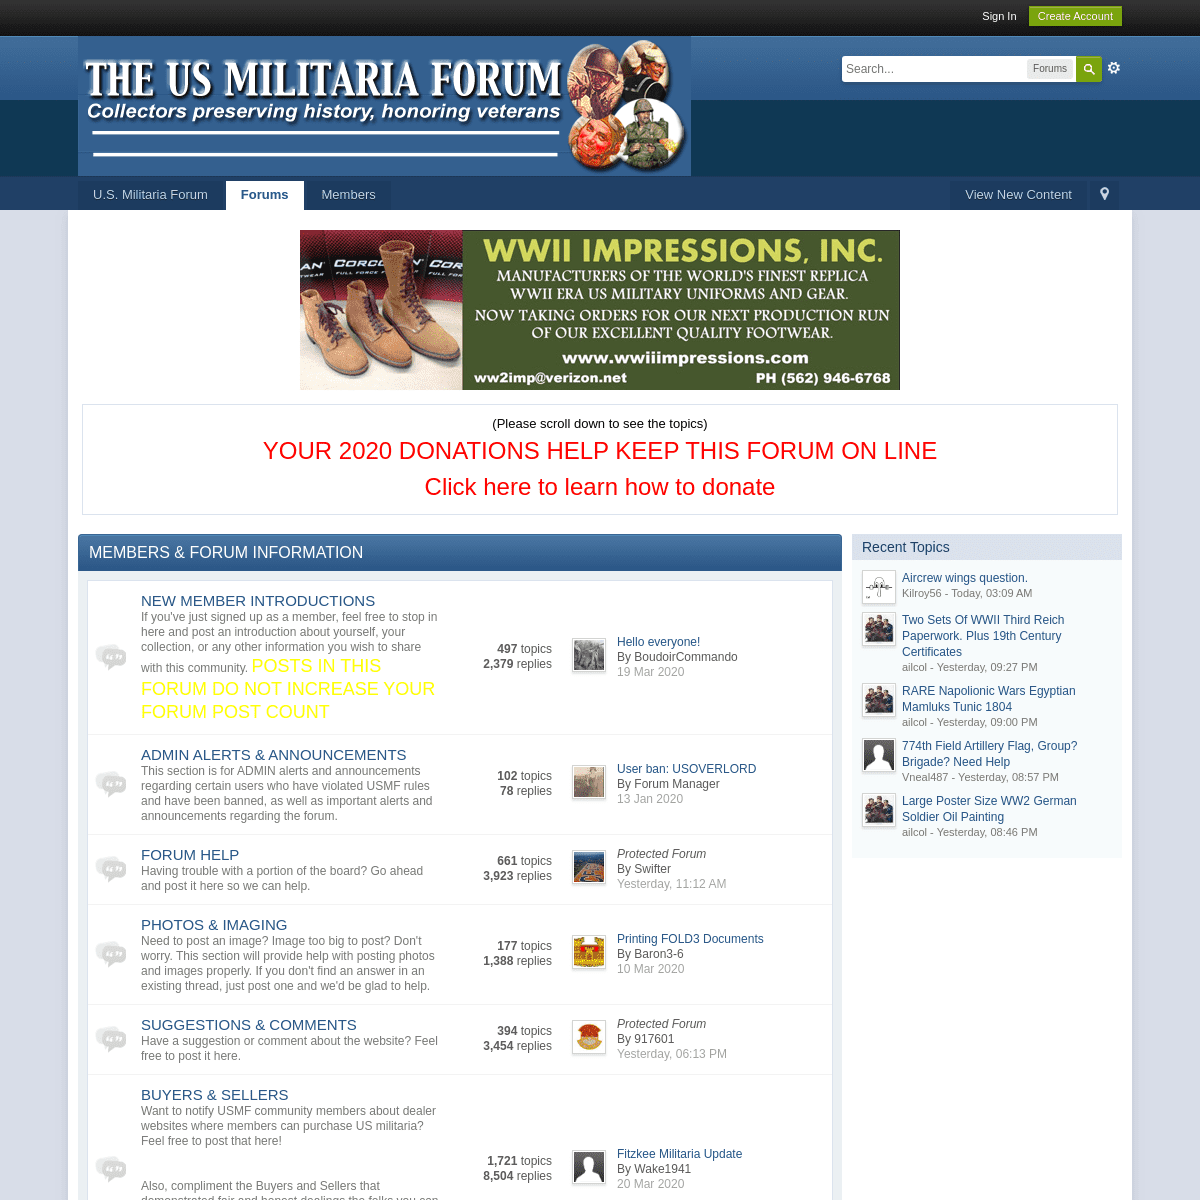 A complete backup of usmilitariaforum.com